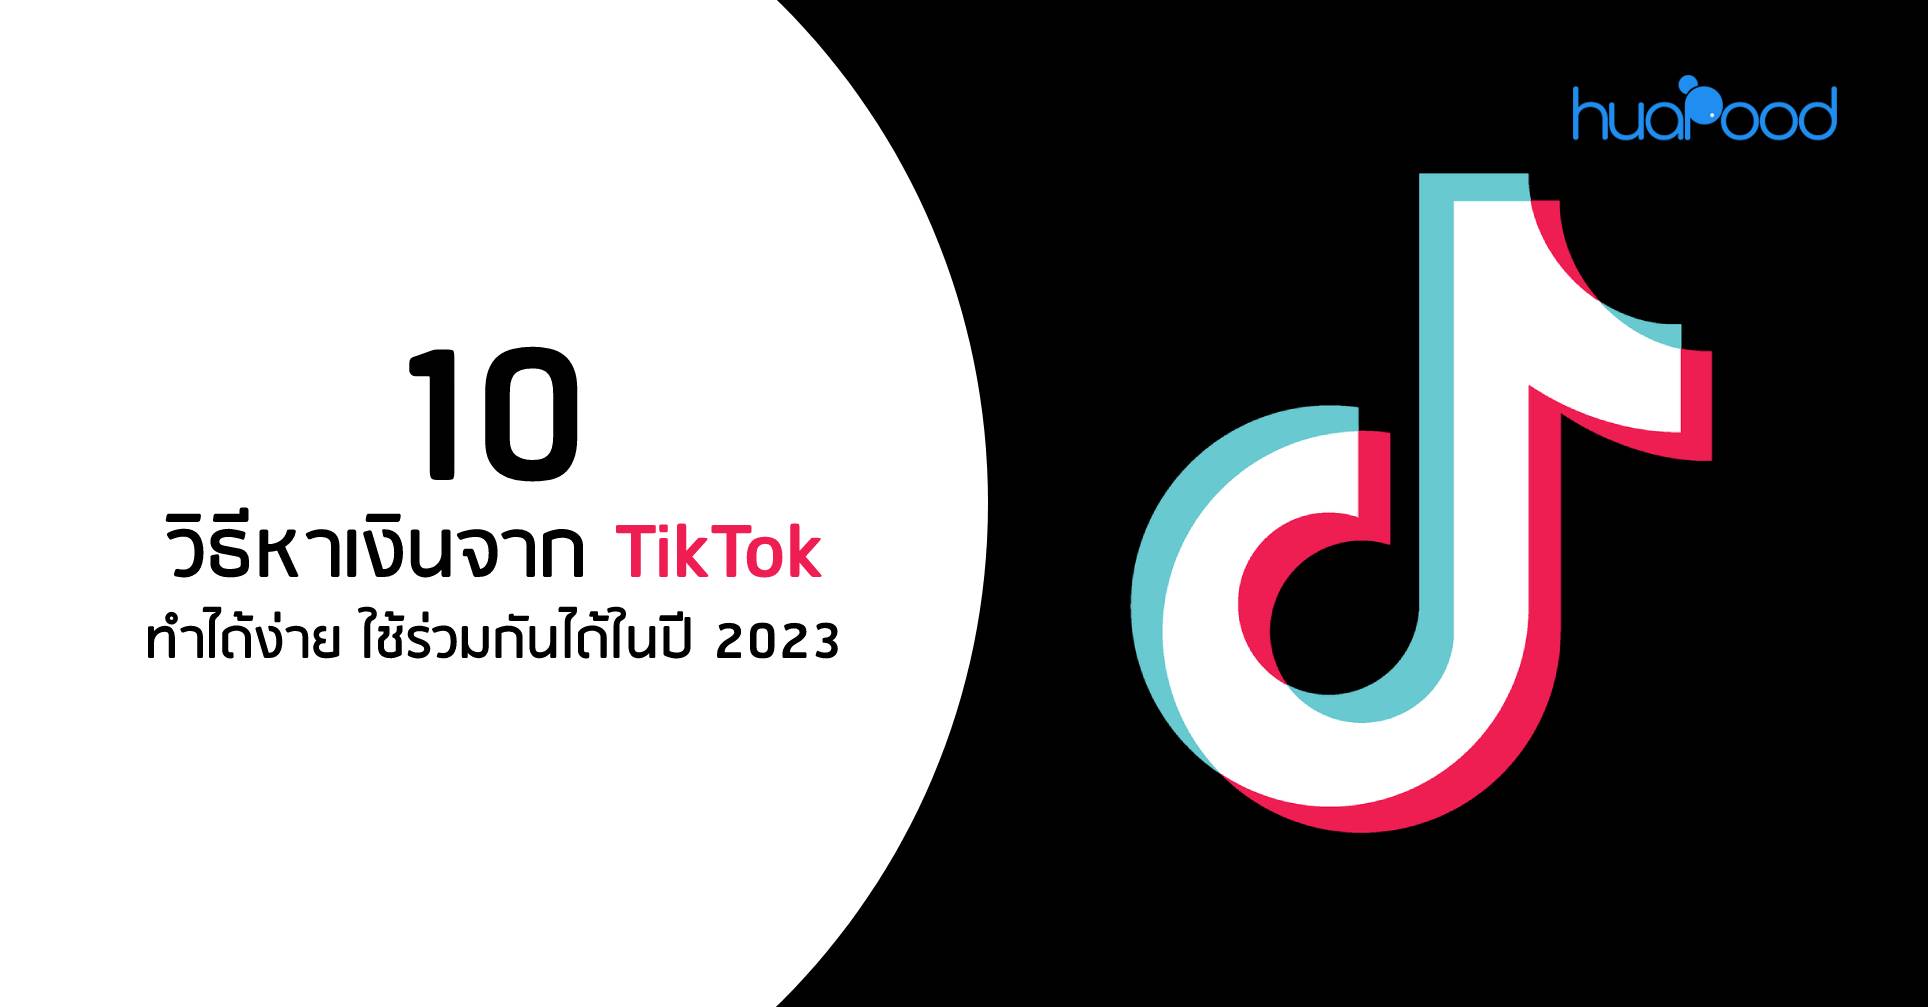 10 วิธีหาเงินจาก Tiktok ทำได้ง่าย ใช้ร่วมกันได้ในปี 2023